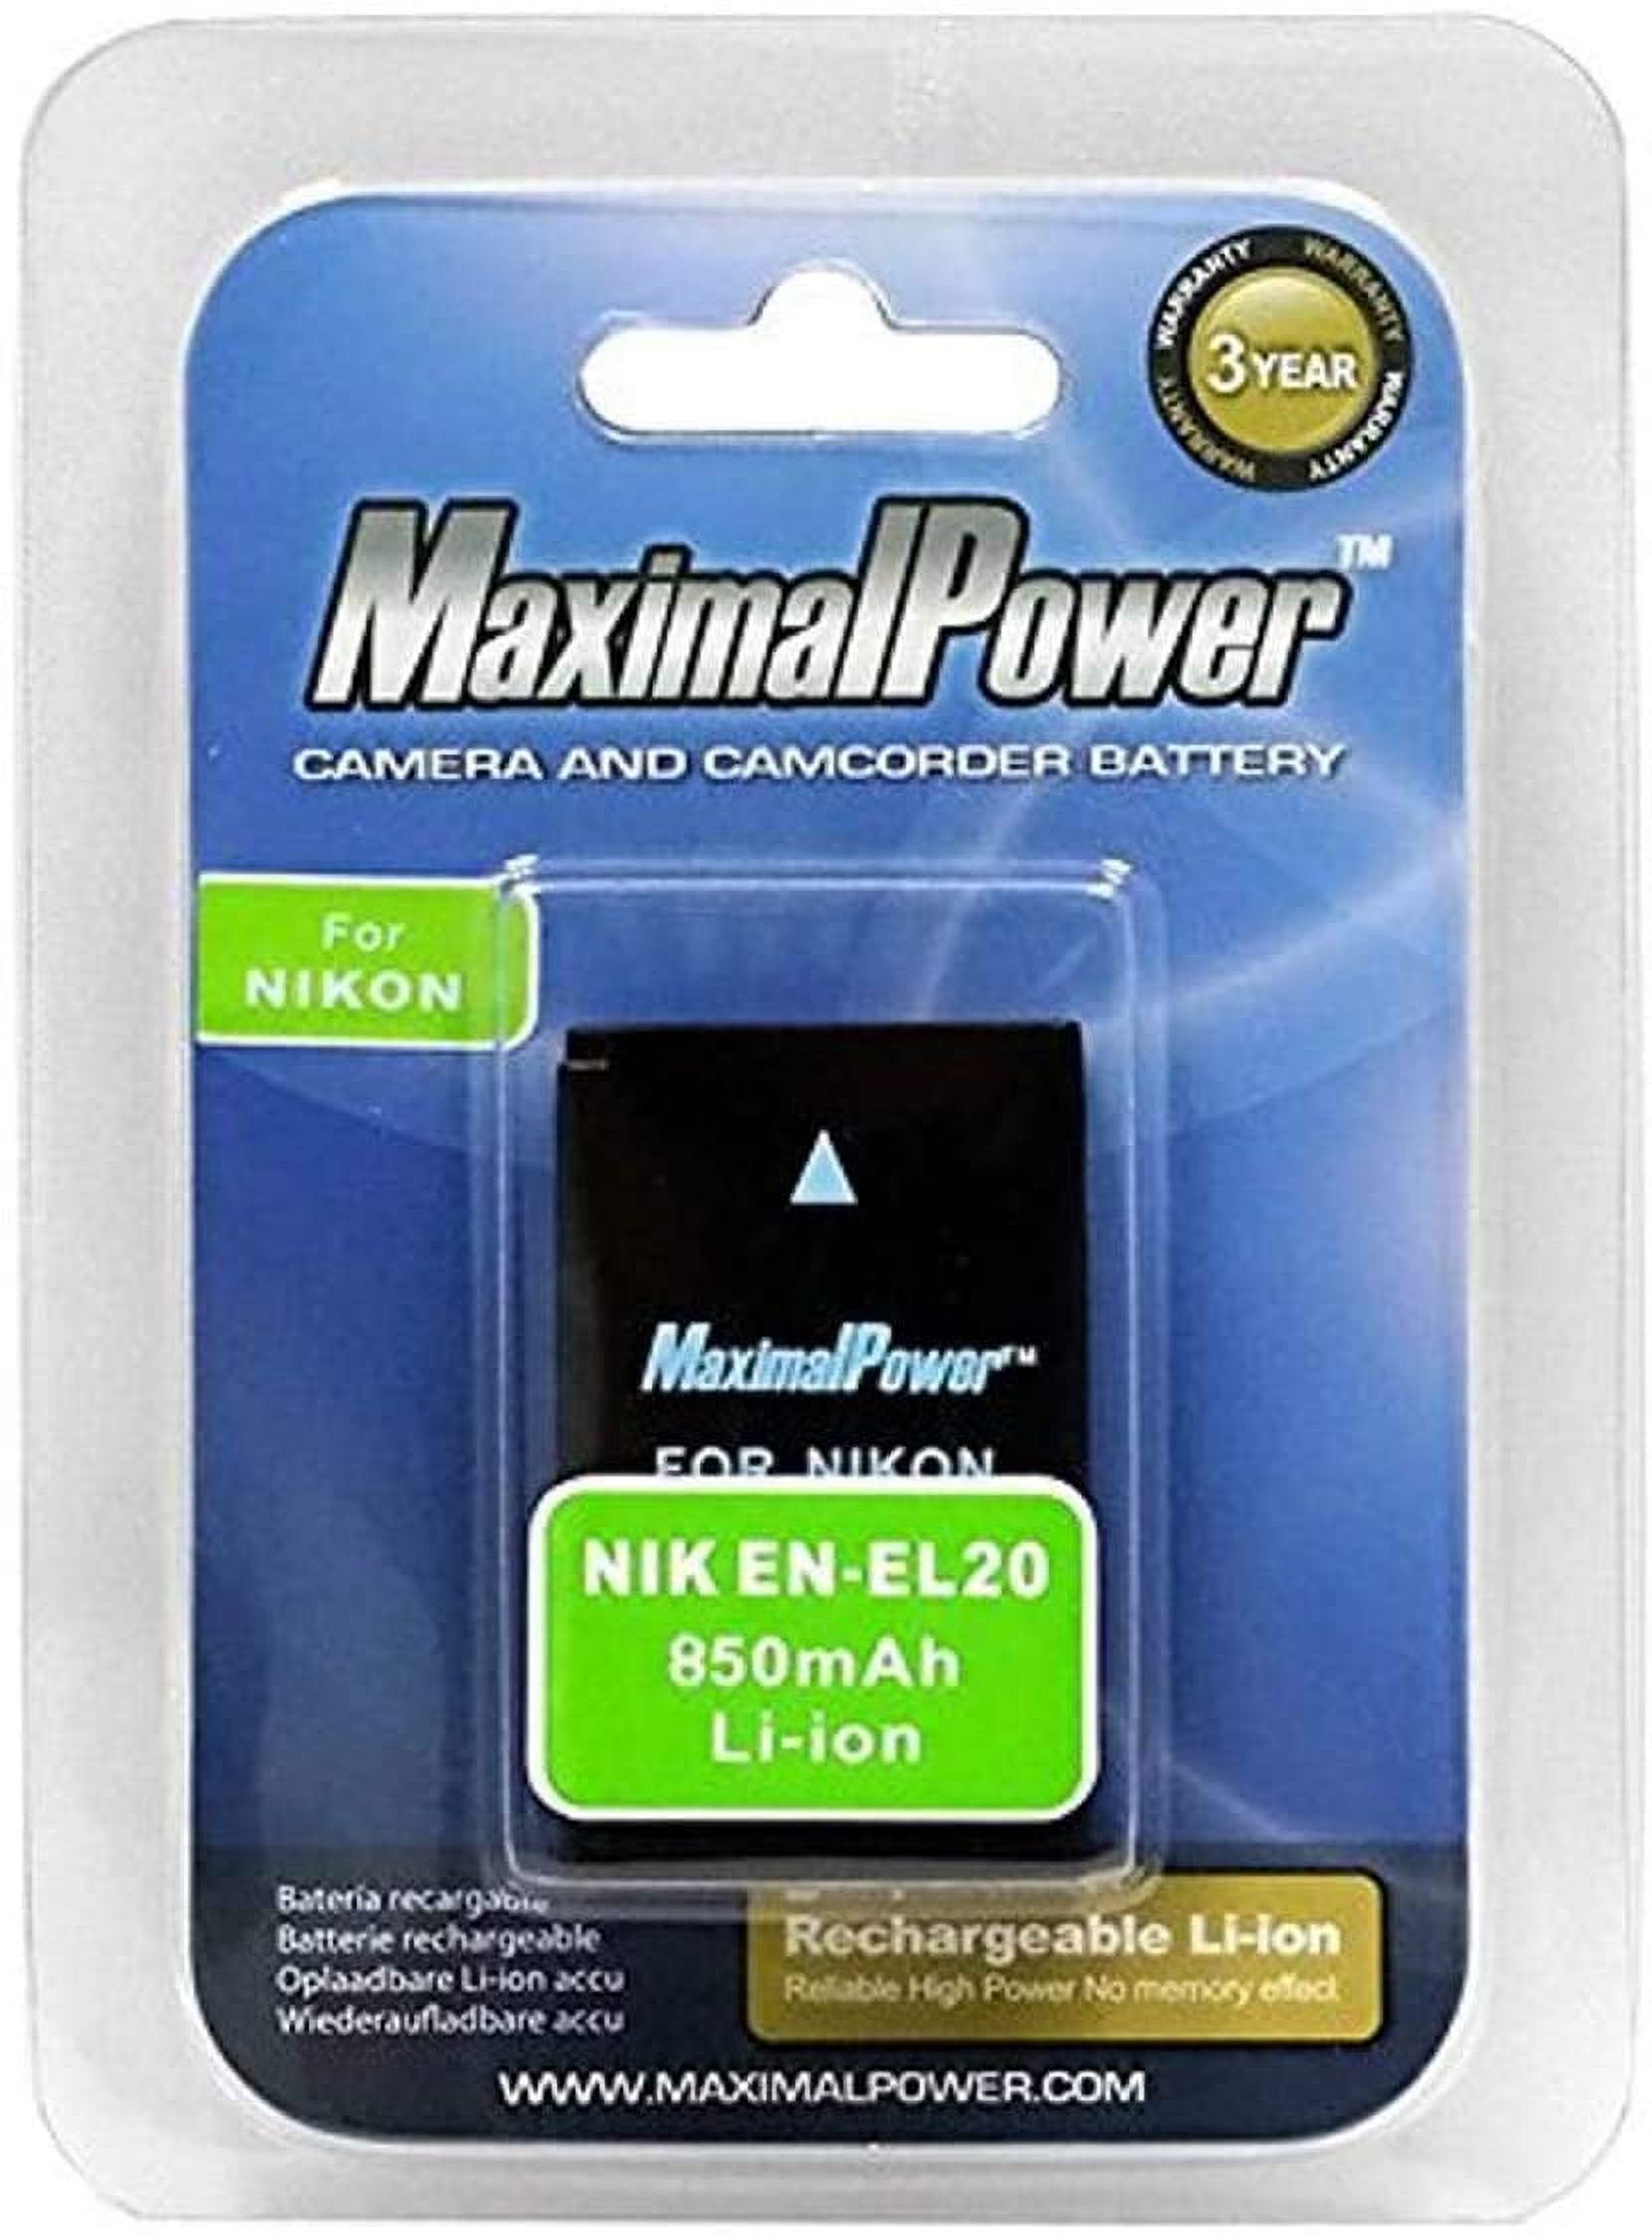 Maximalpower for Nikon EN-EL20, EN-EL20A Battery, Nikon Coolpix P950, P1000, DL24-500, Coolpix A, 1 J1, 1 J2, 1 J3, 1 S1, 1 V3 Digital Cameras - image 4 of 6